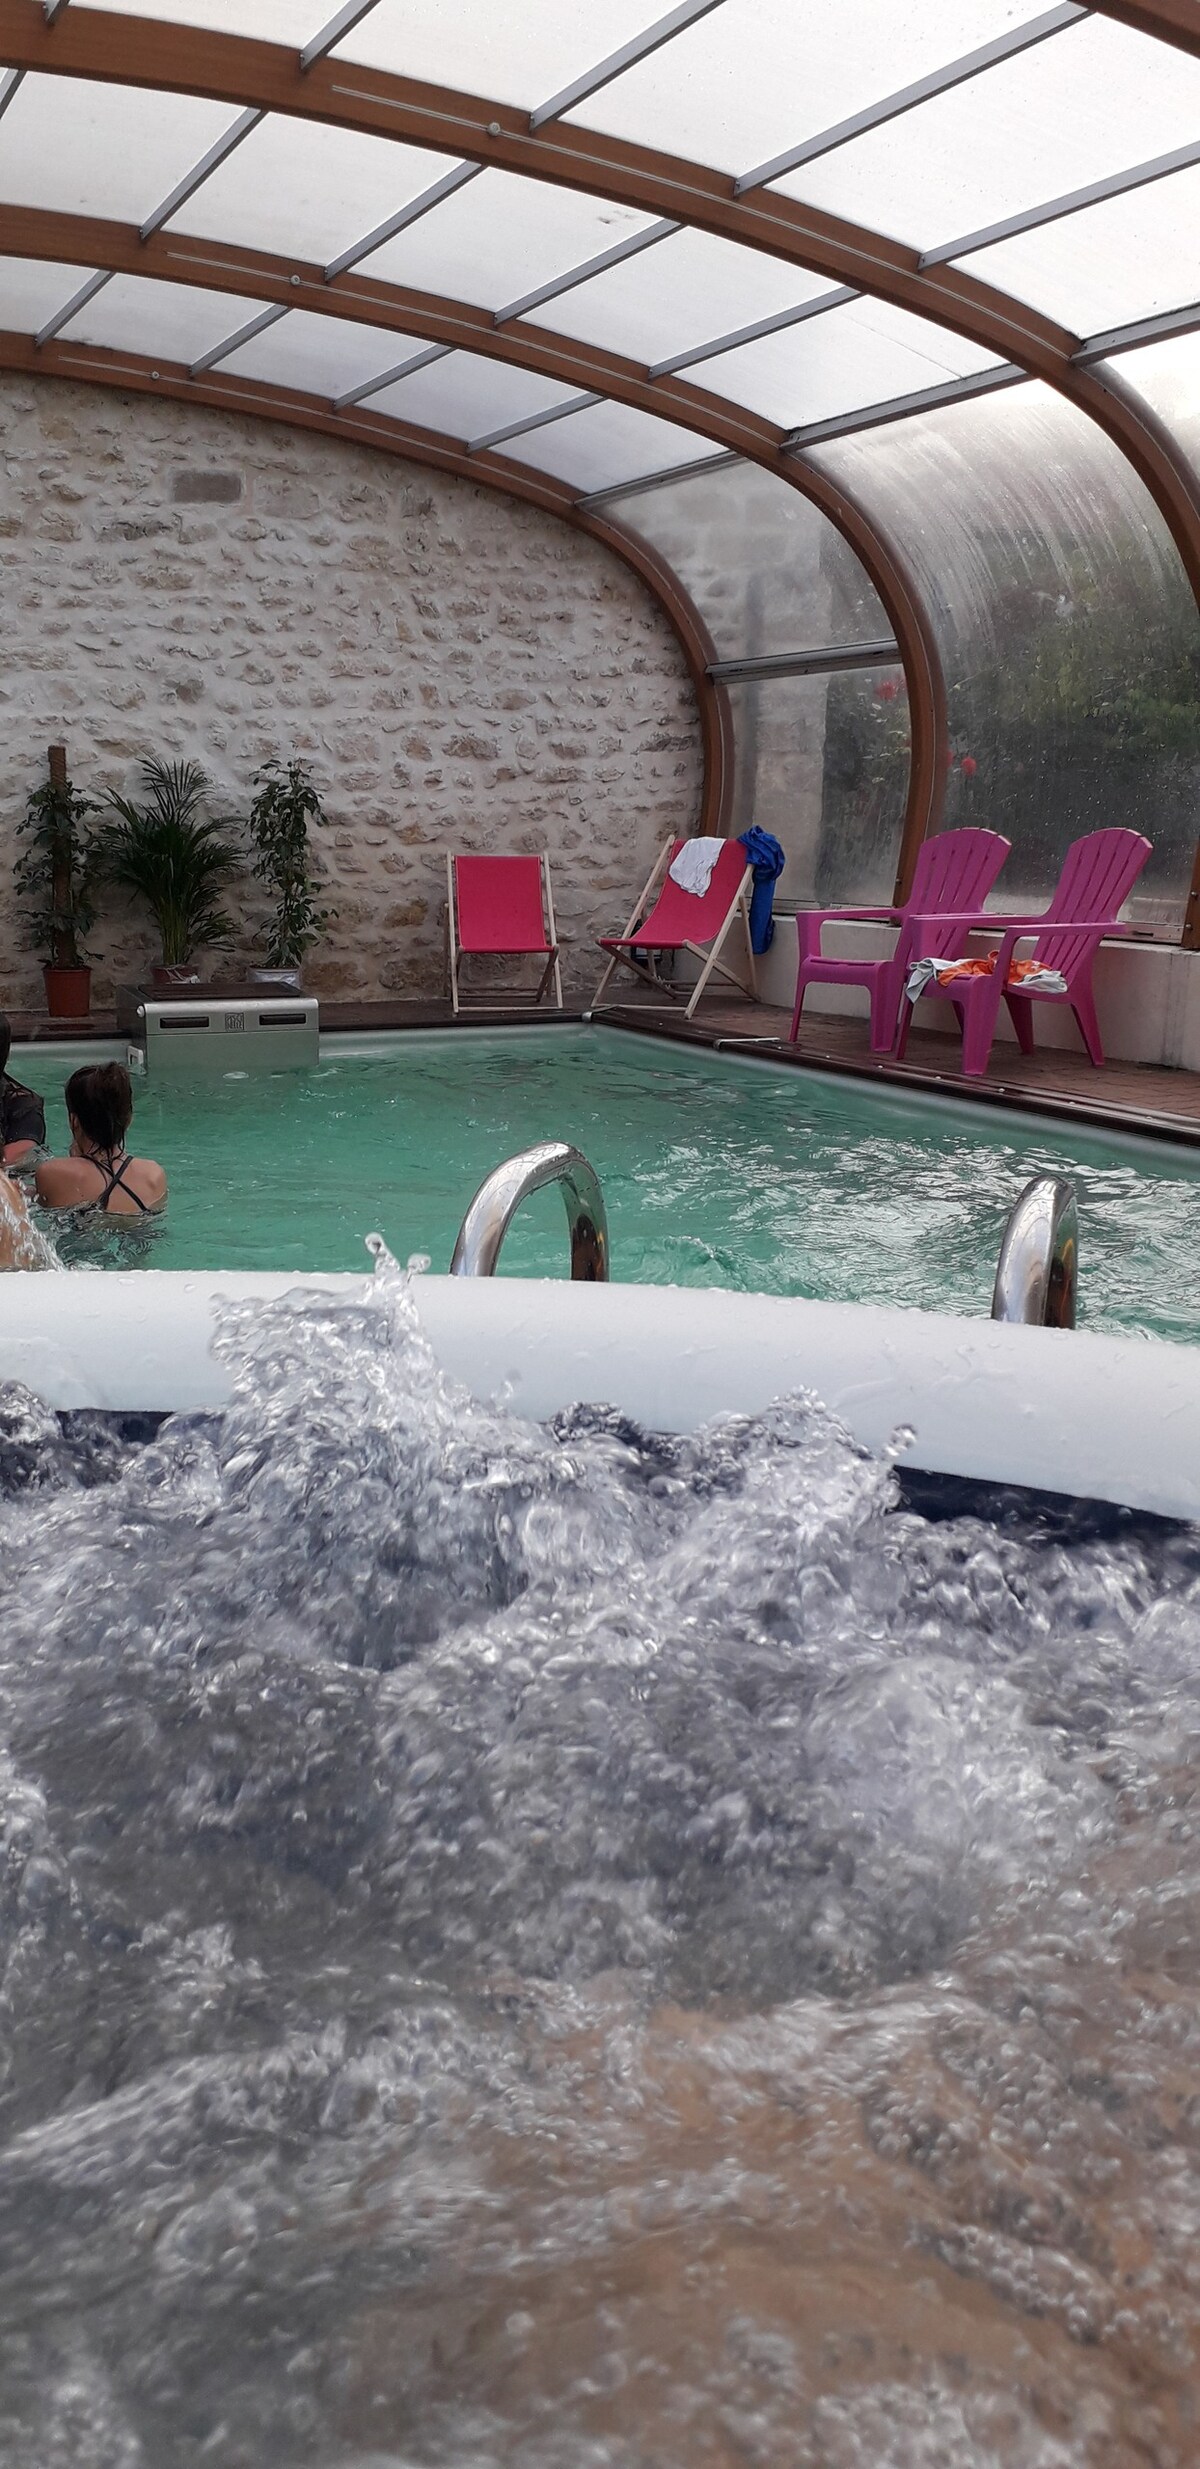 巴黎桑拿别墅按摩浴缸加热泳池1小时